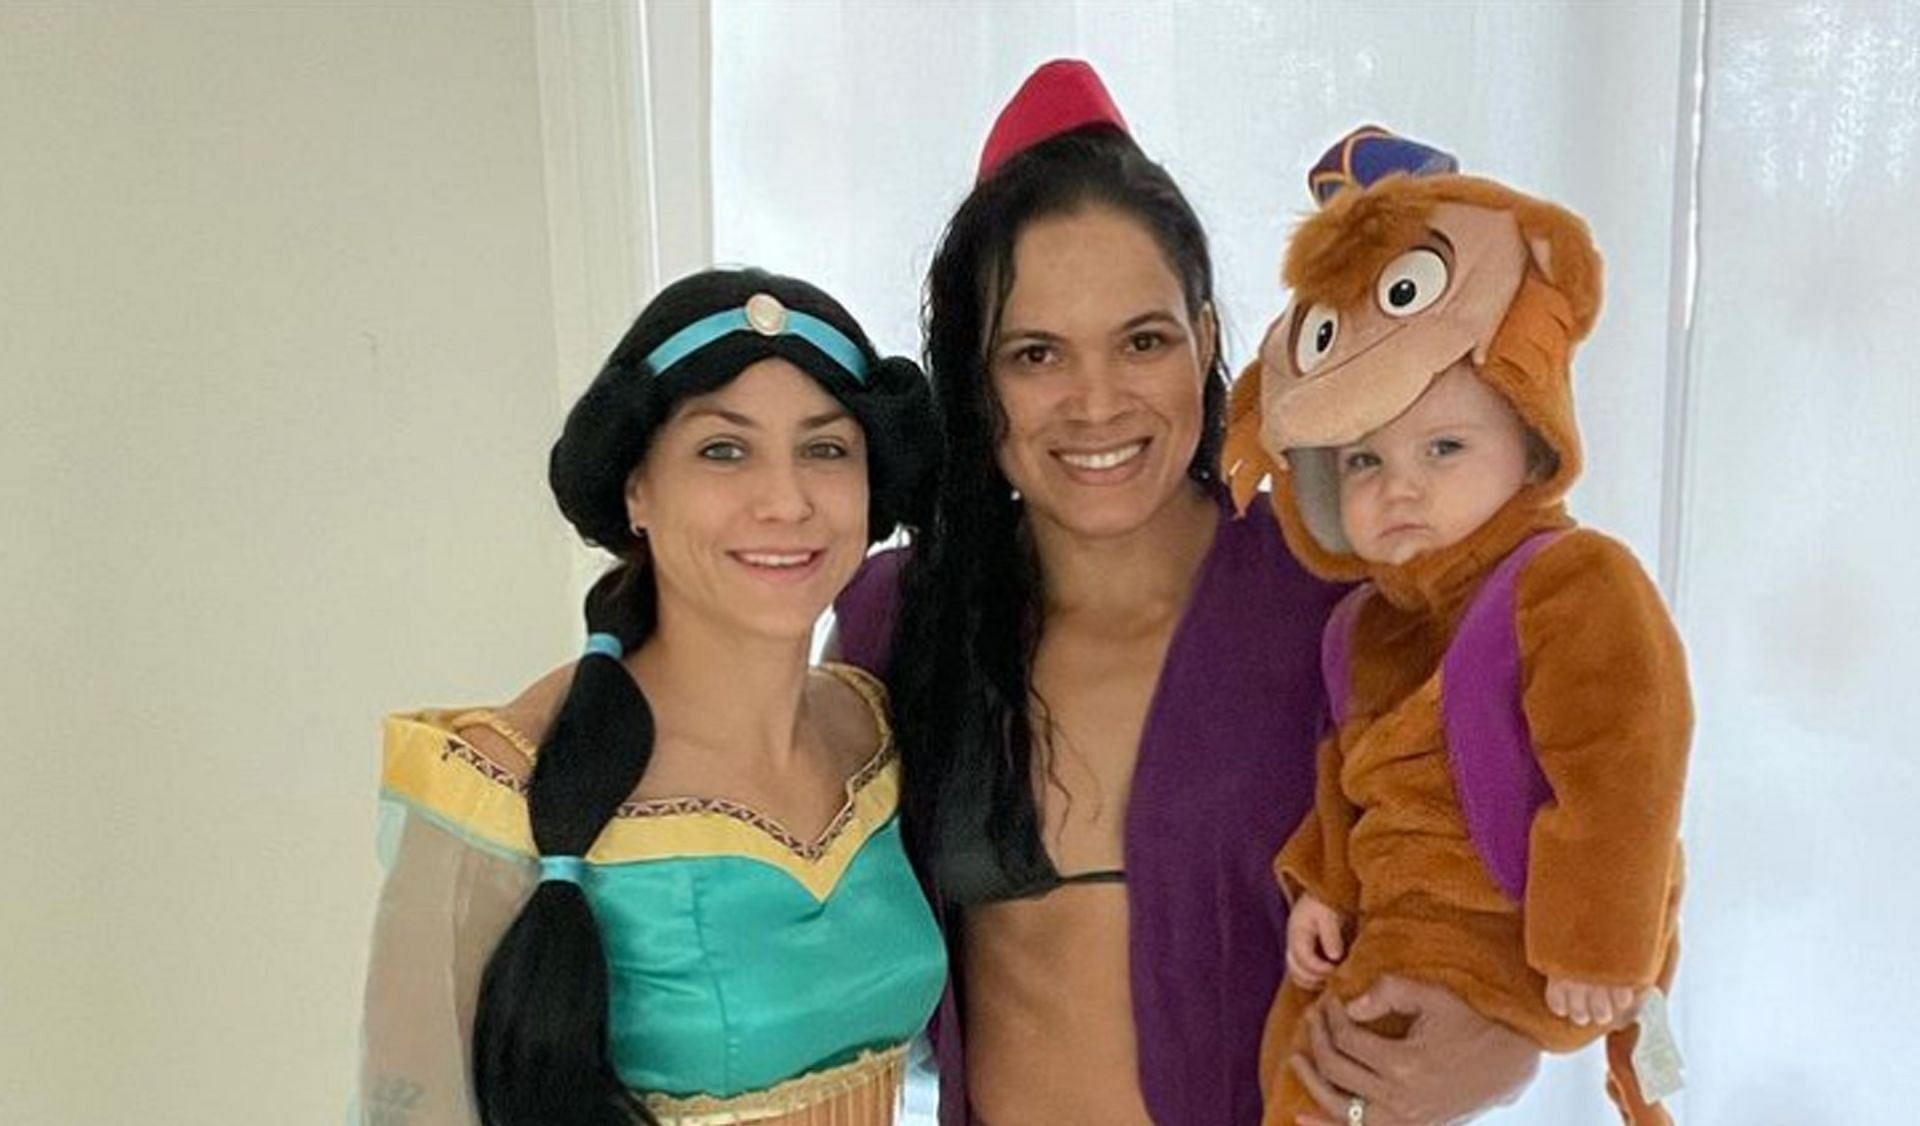 Amanda Nunes and Family (Image courtesy @amanda_leoa on Instagram)